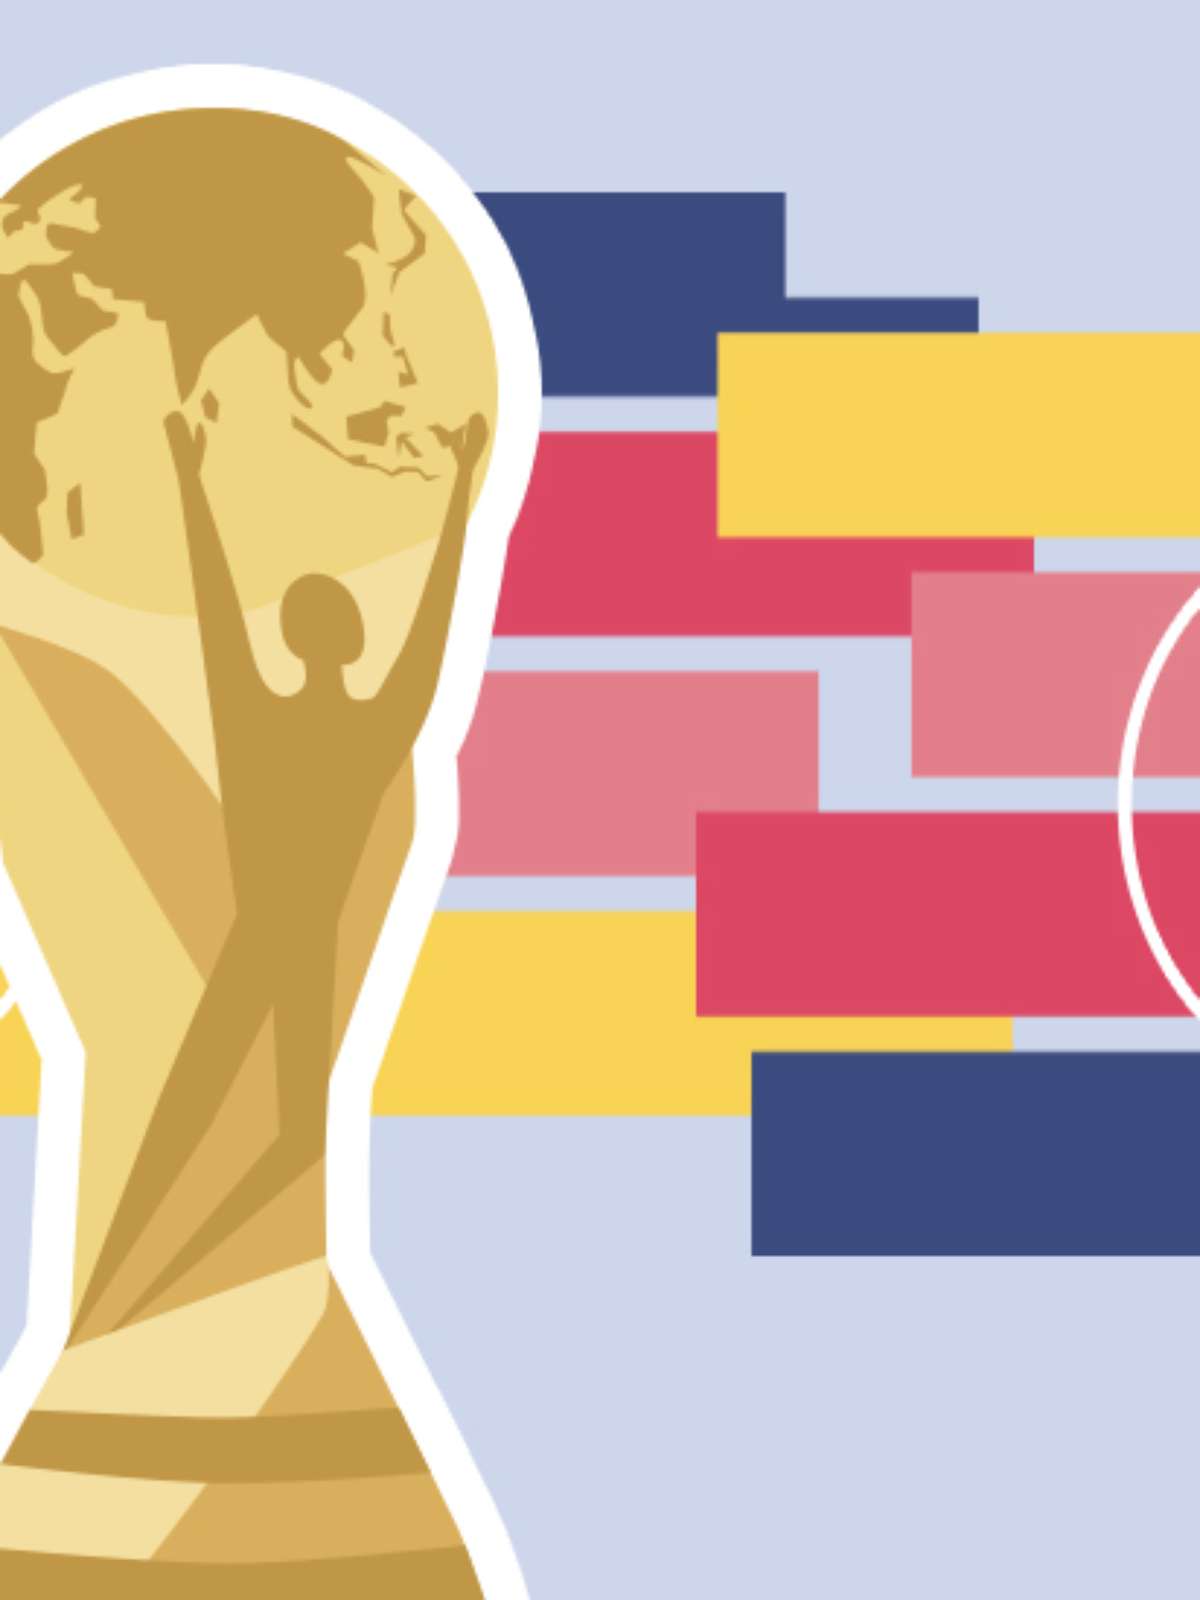 Copa do Mundo 2018: tudo o que você precisa saber em 5 gráficos - BBC News  Brasil